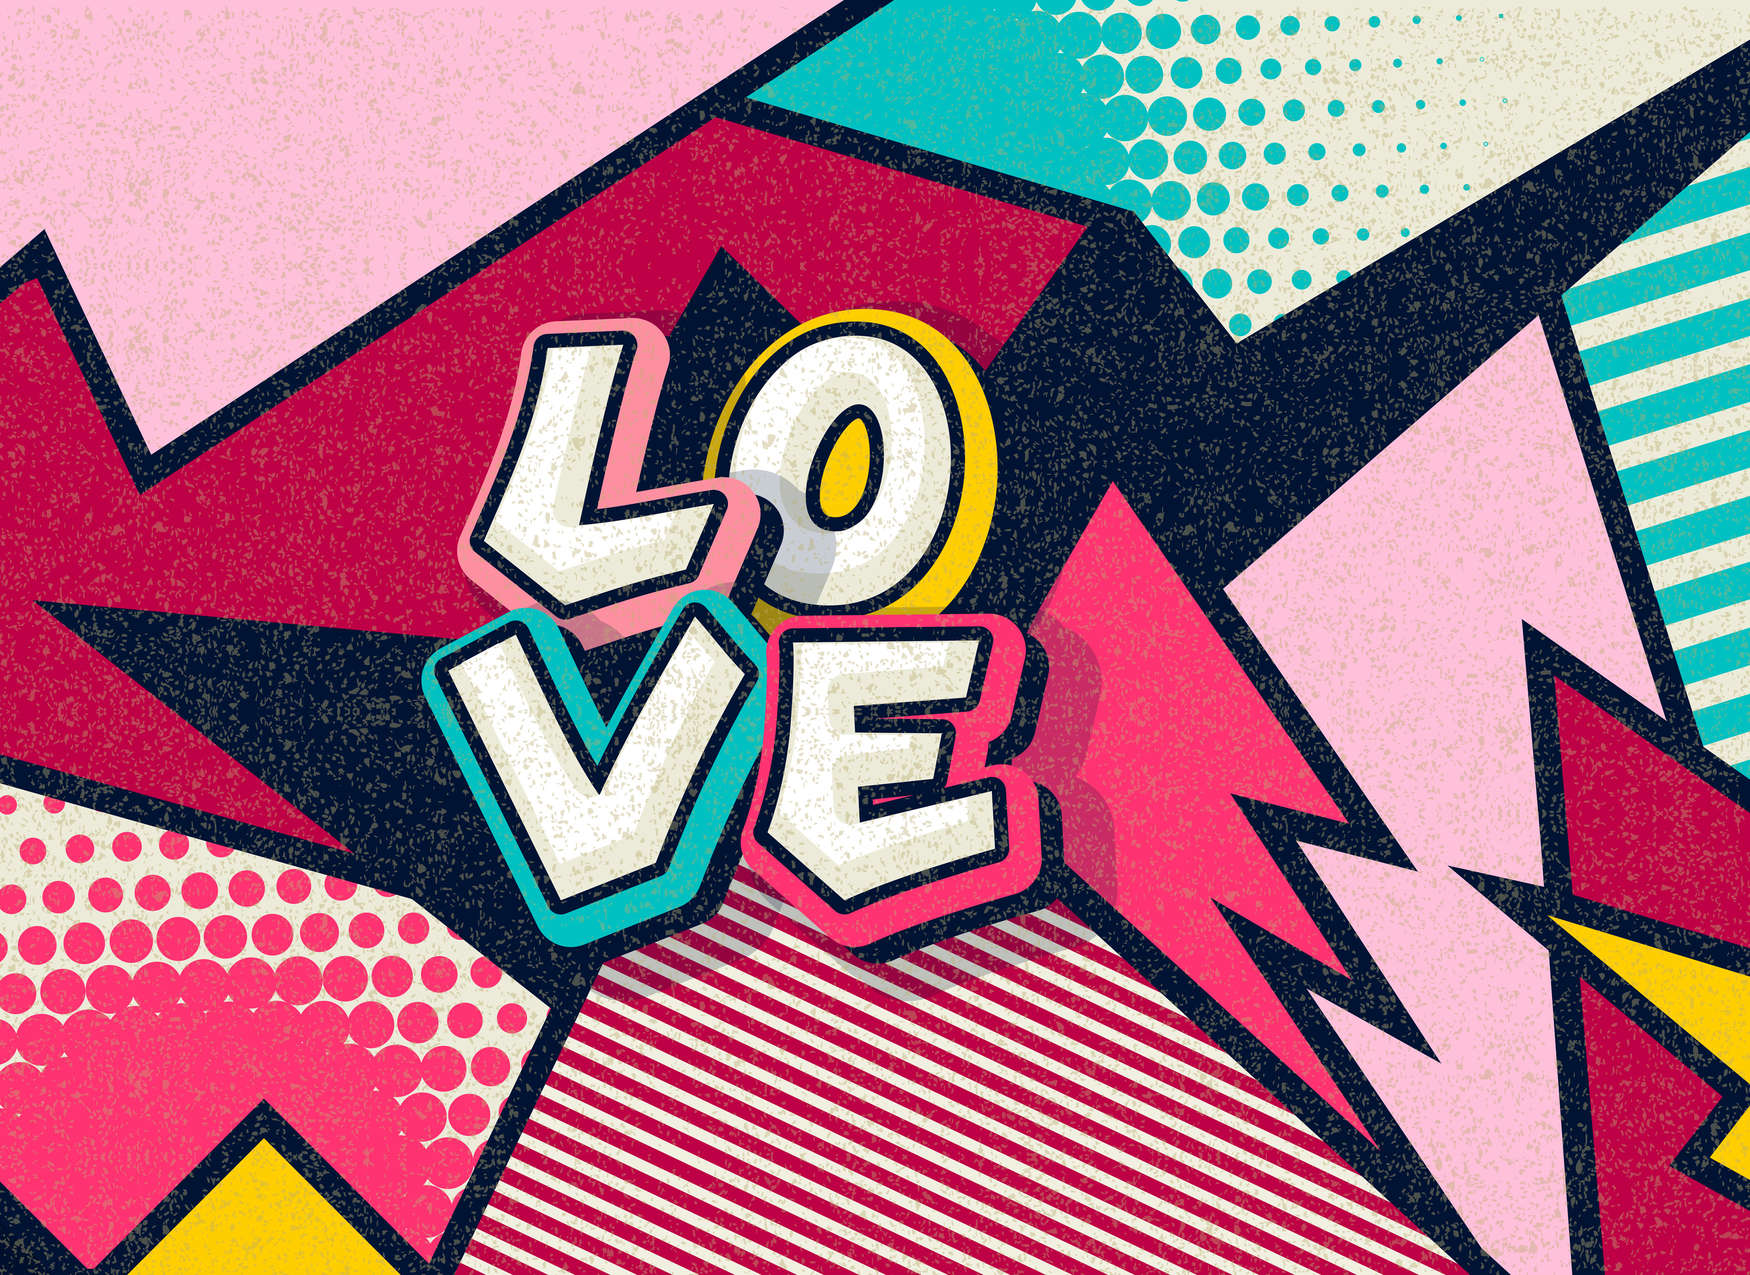             Papel pintado Pop Up Love de estilo cómico - Colorido
        